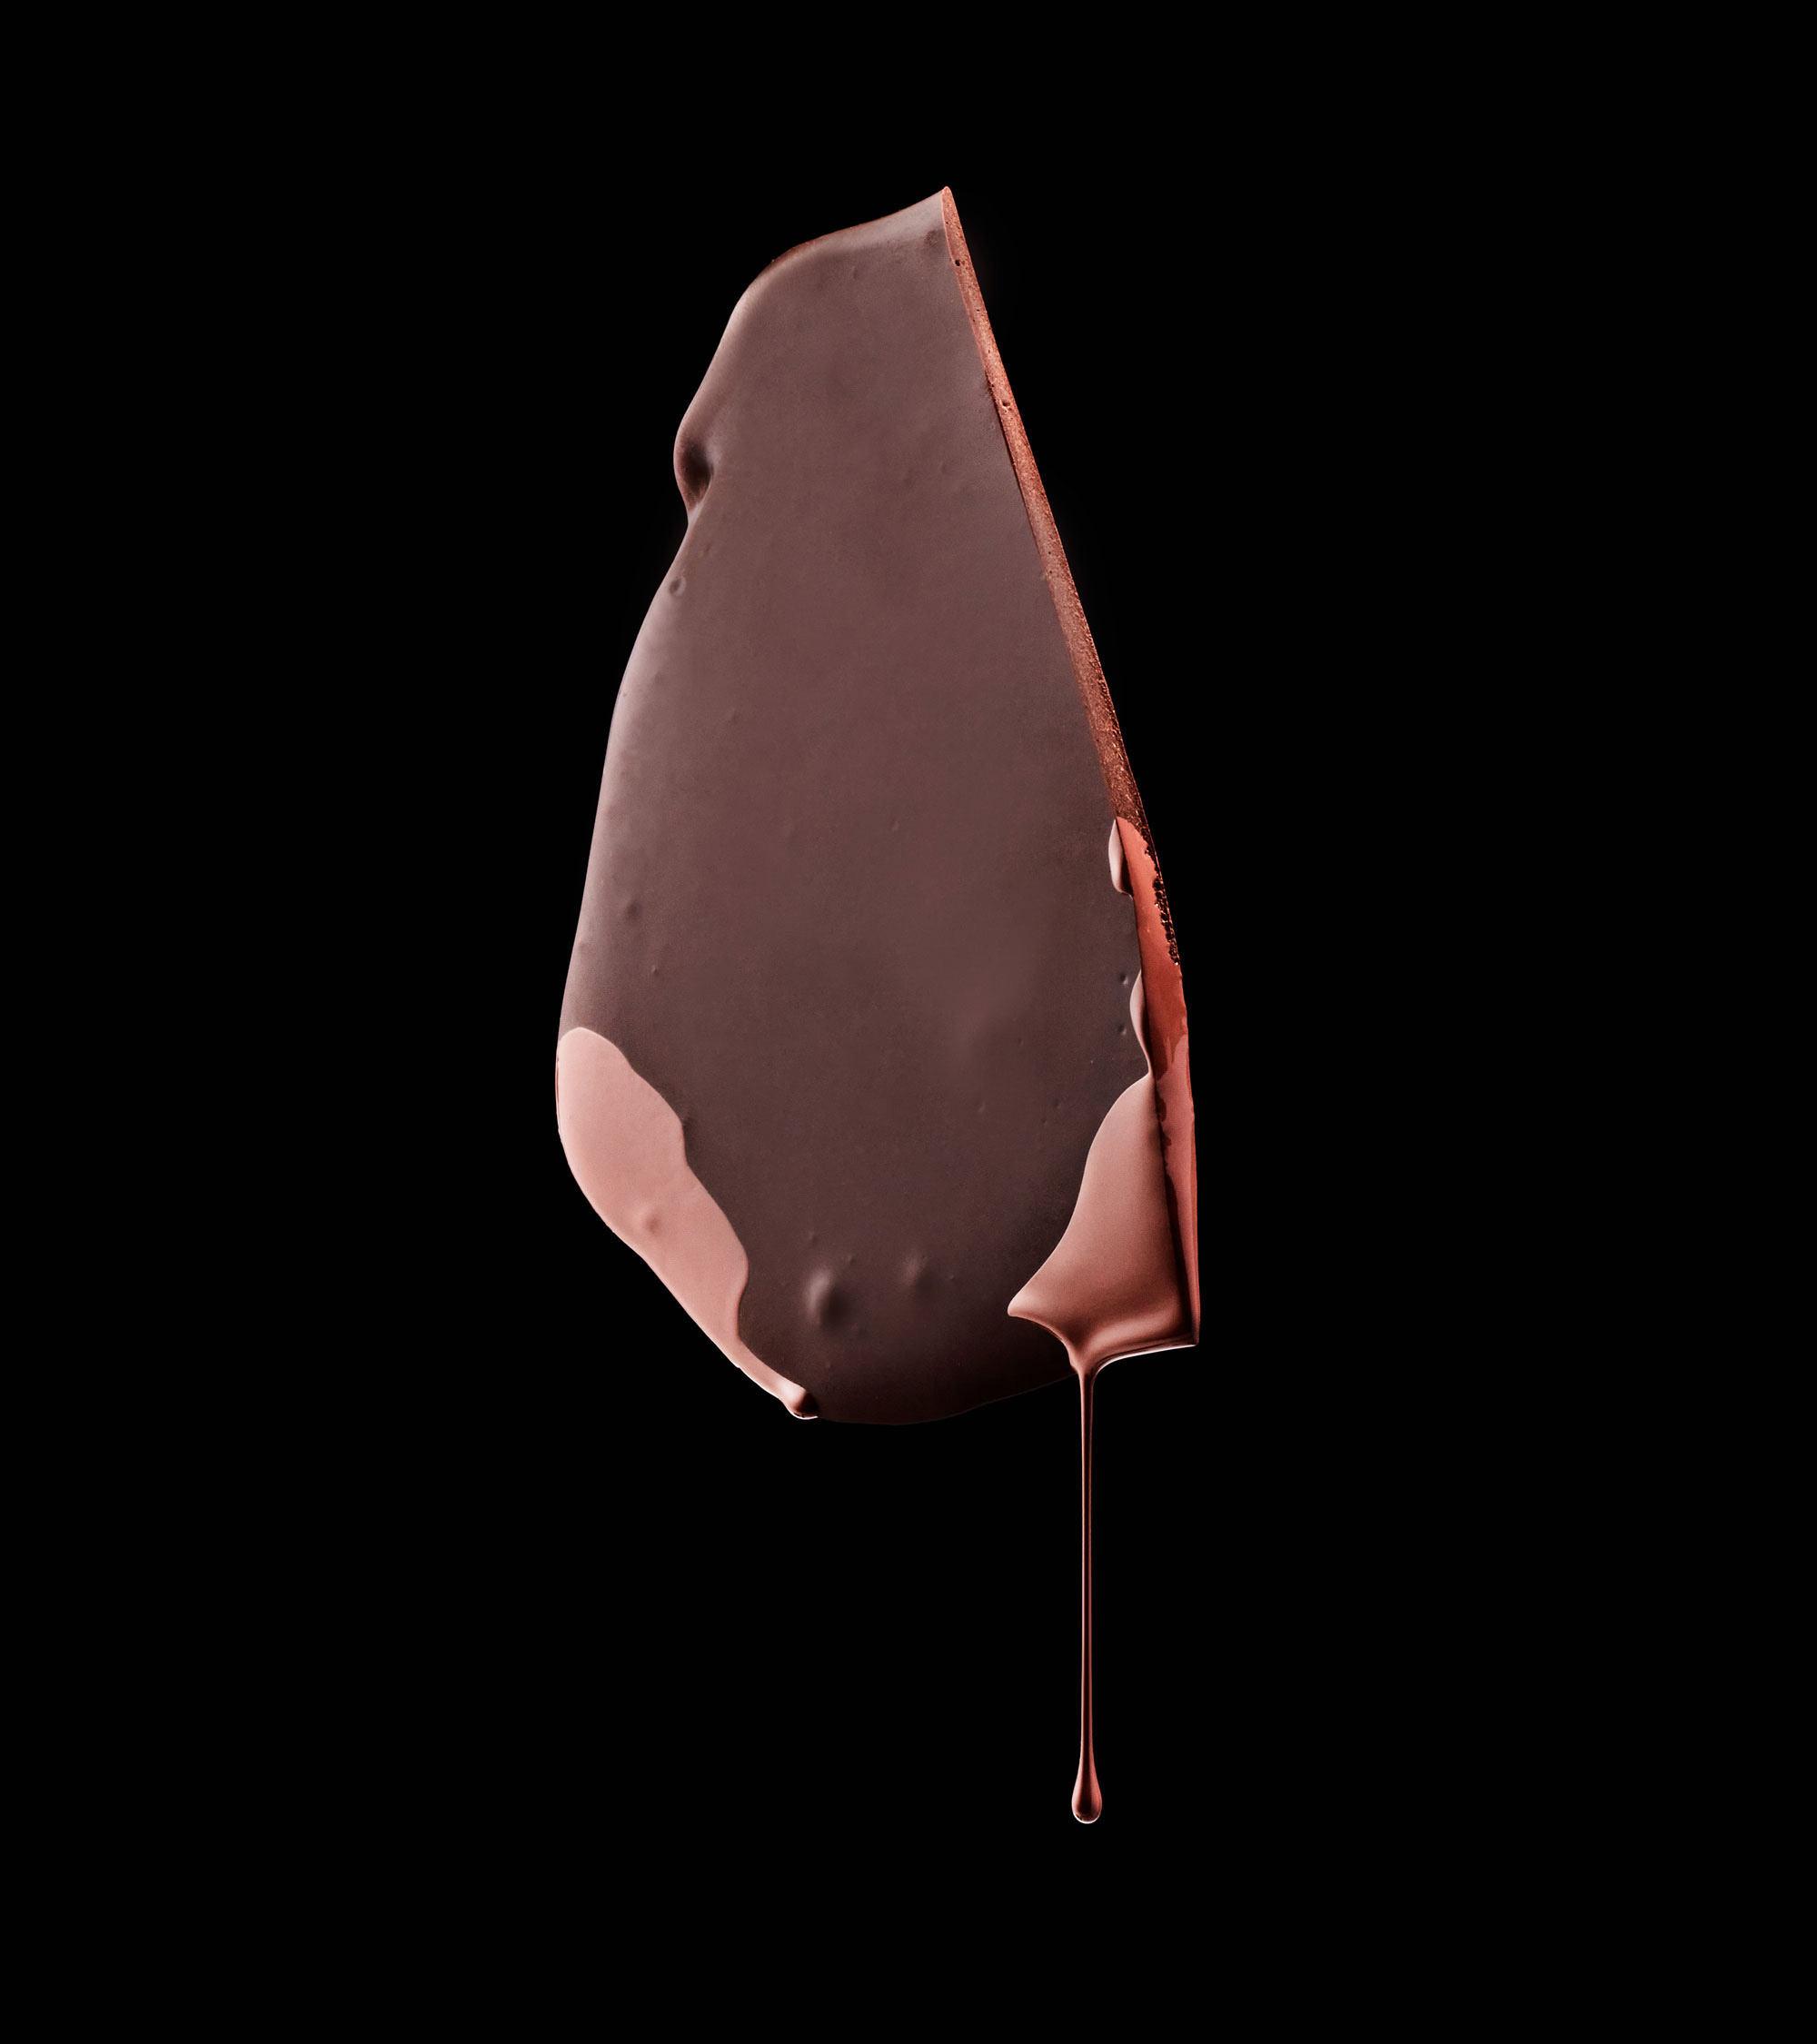 Imagery-Art-Drop-Chocolate